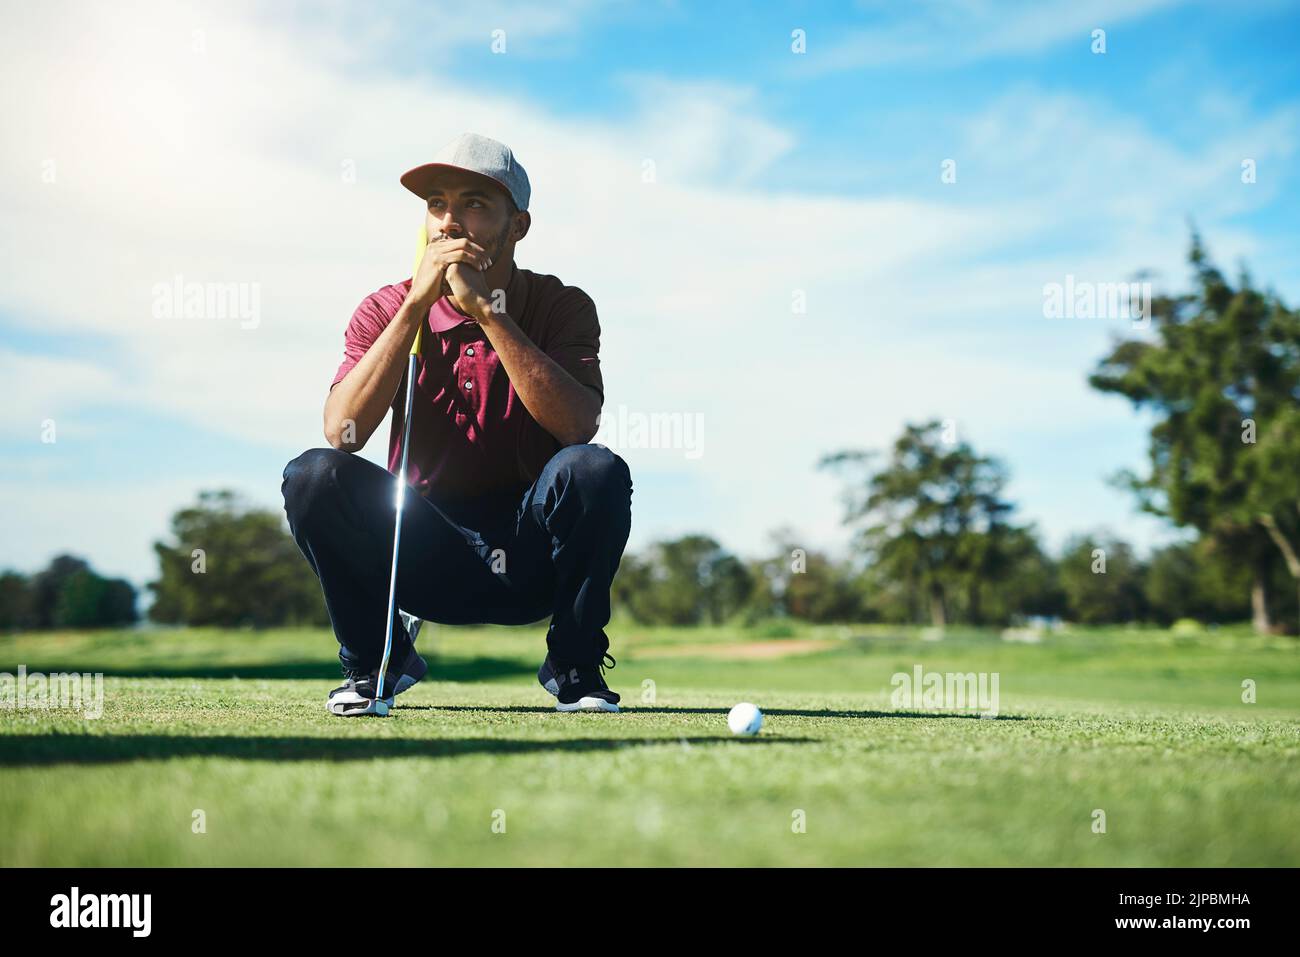 Auf dem Fairway. Ein fokussierter junger Golfer, der einen Golfball anschaut, während er tagsüber draußen auf dem Gras sitzt. Stockfoto